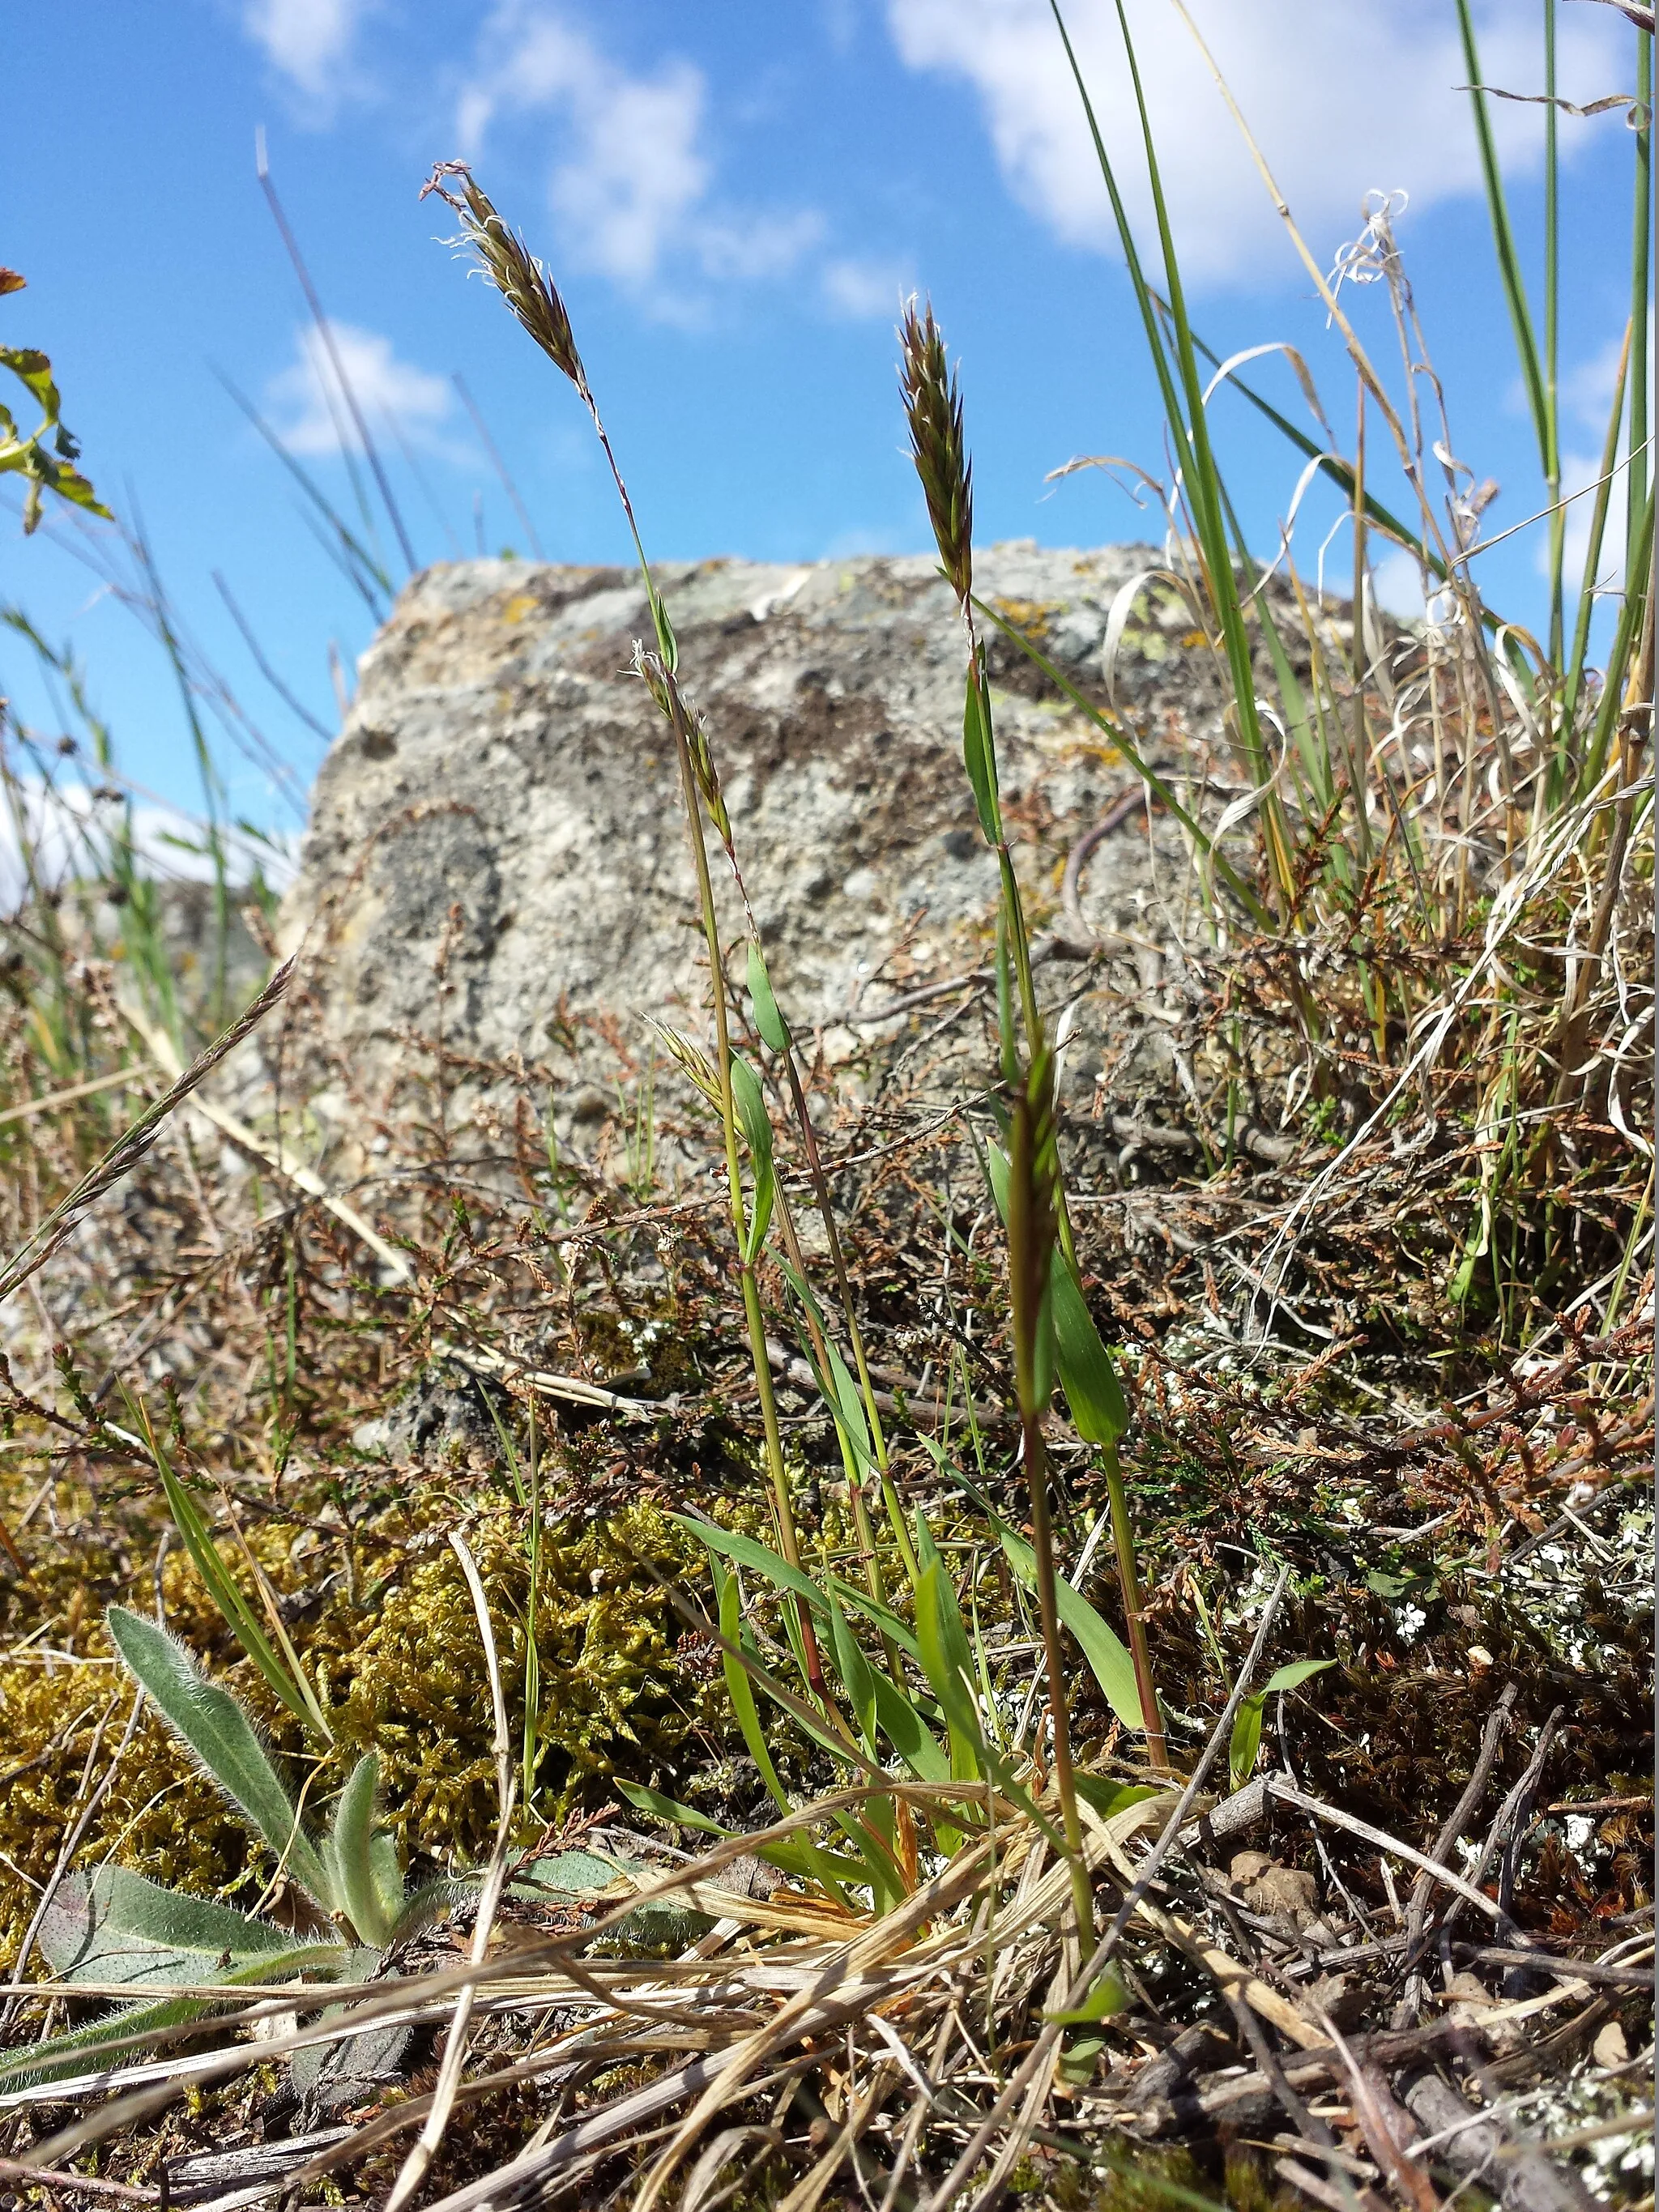 Photo showing: Habitus Taxonym: Anthoxanthum odoratum ss Fischer et al. EfÖLS 2008 ISBN 978-3-85474-187-9
Location: Gollitsch near Retz, district Hollabrunn, Lower Austria - ca. 300 m a.s.l.
Habitat: dry grassland